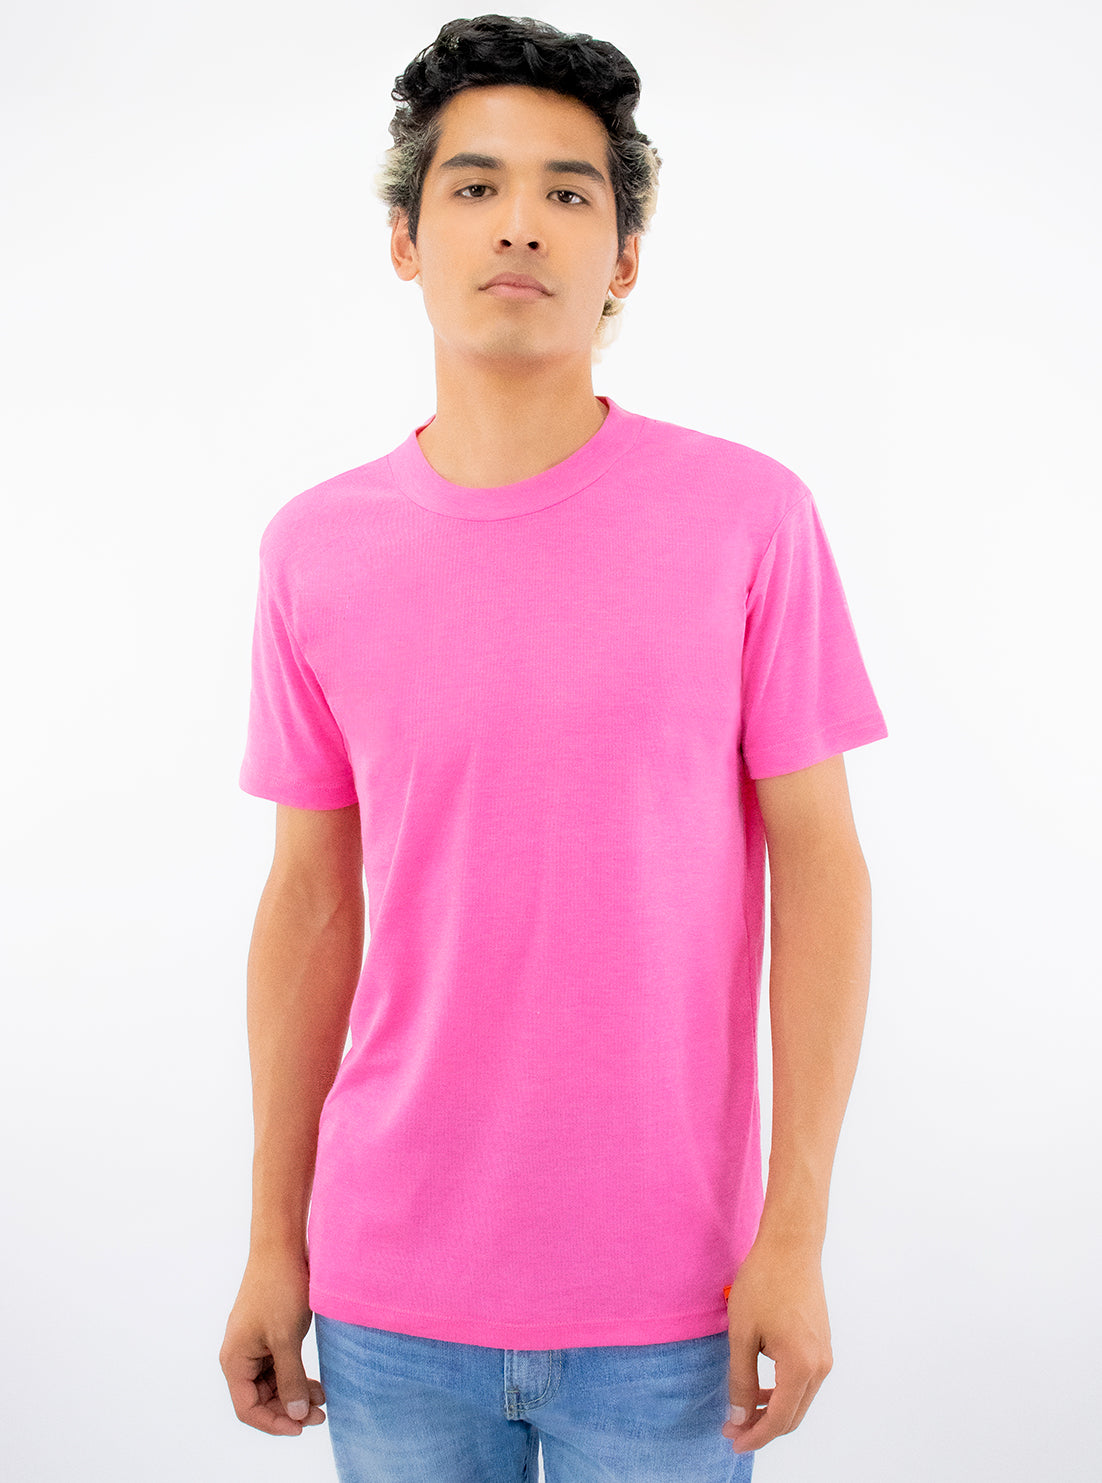 Playera básica manga corta de color rosa